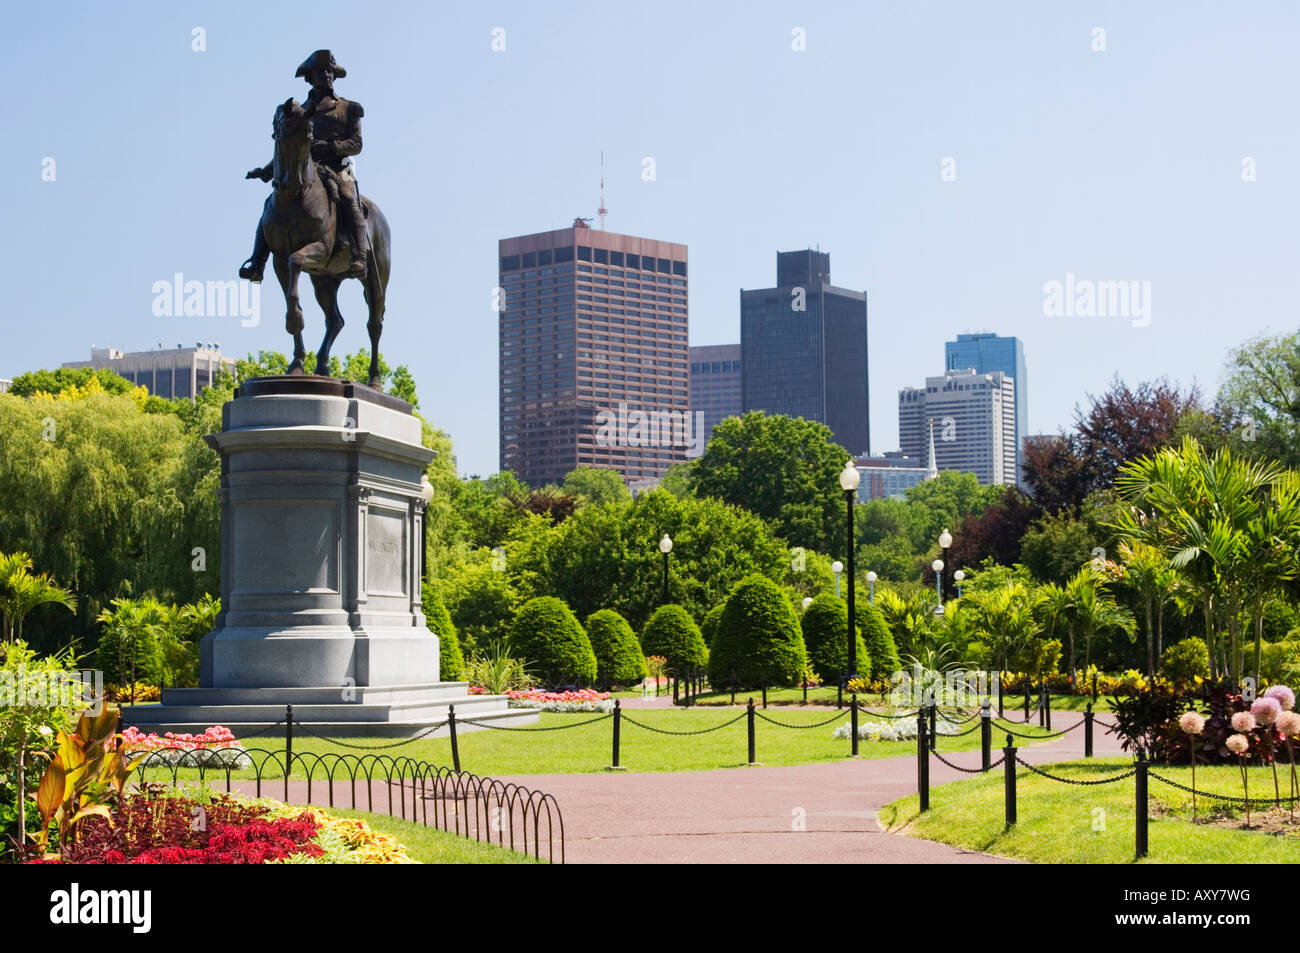 Statue of George Washington on horseback, Public Garden, Boston, Massachusetts, USA Stock Photo